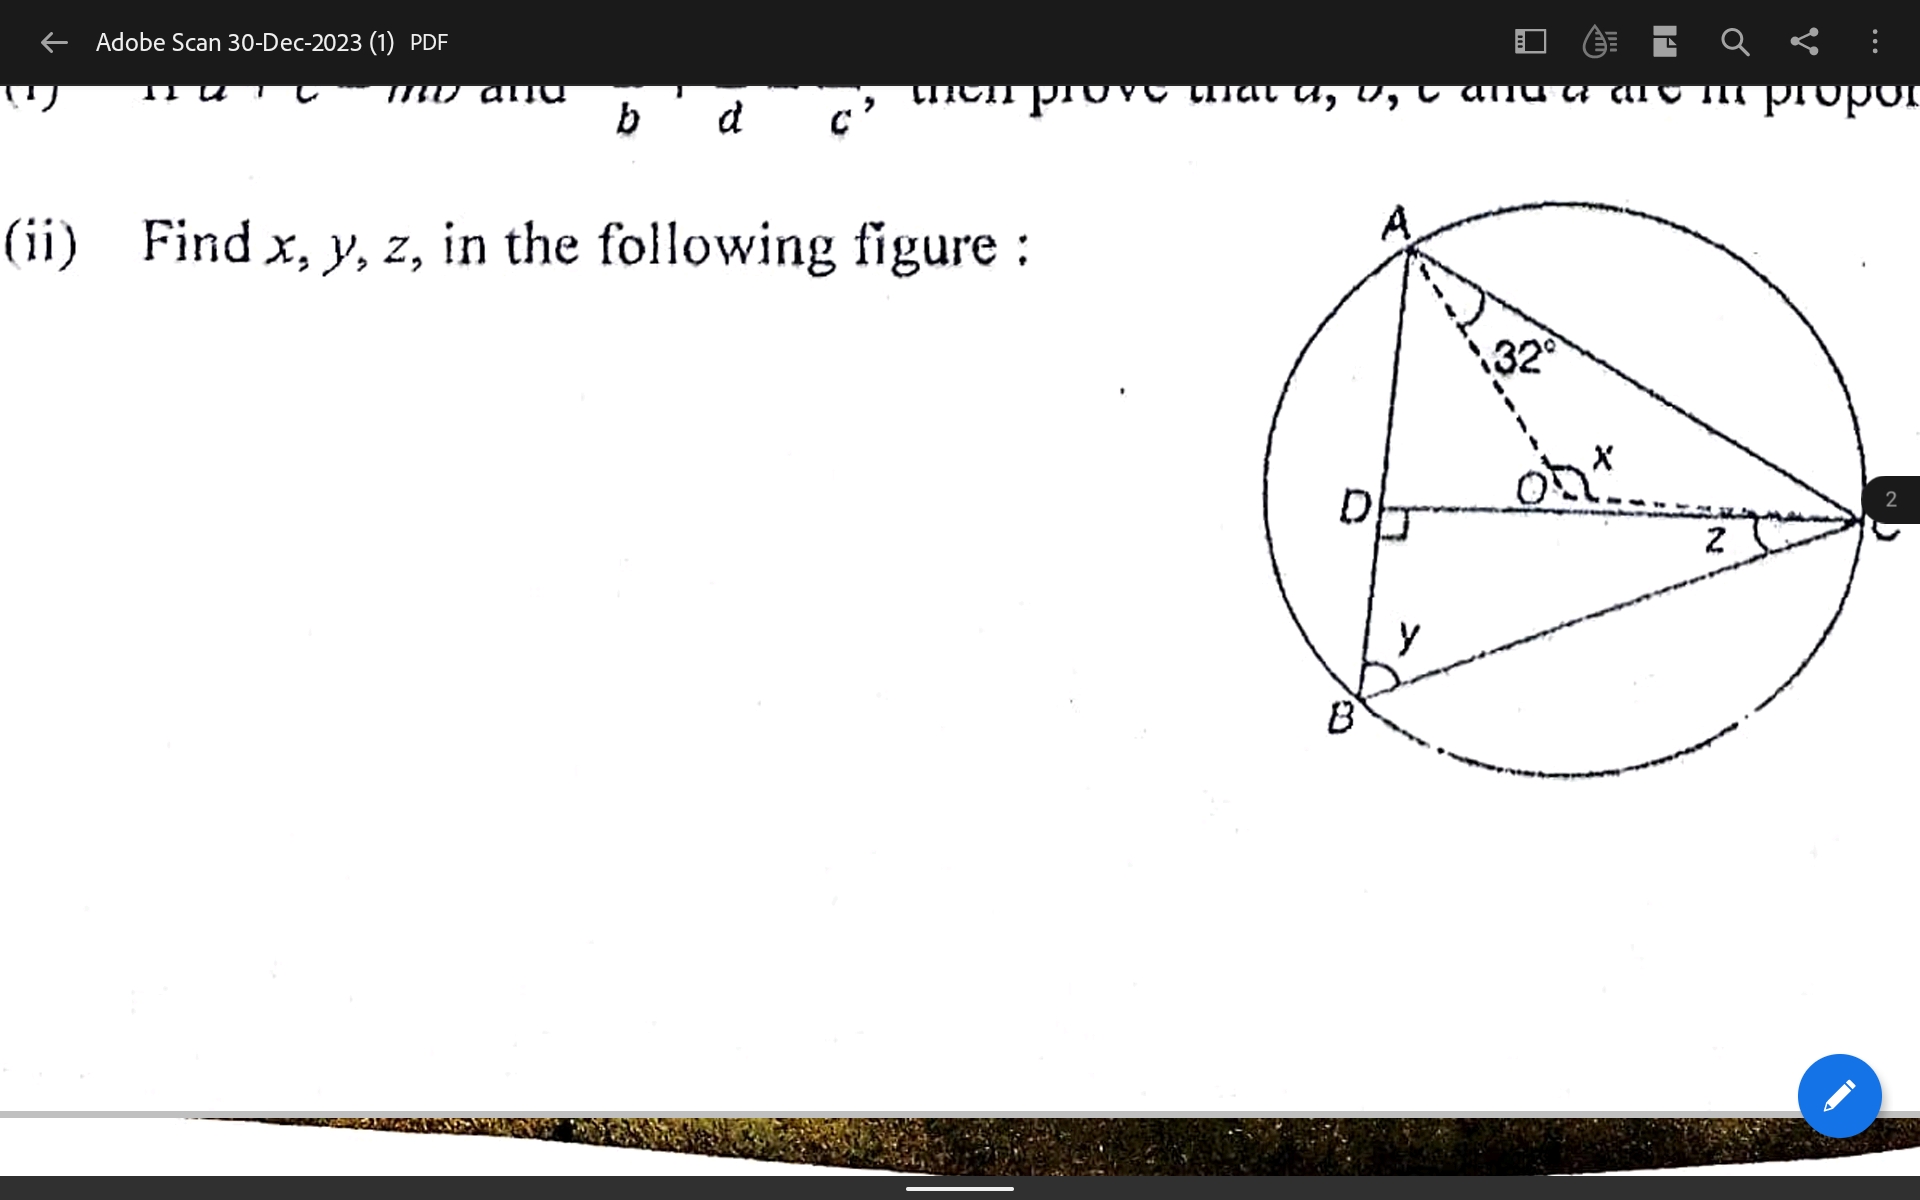 (ii) Find x,y,z, in the following figure:
